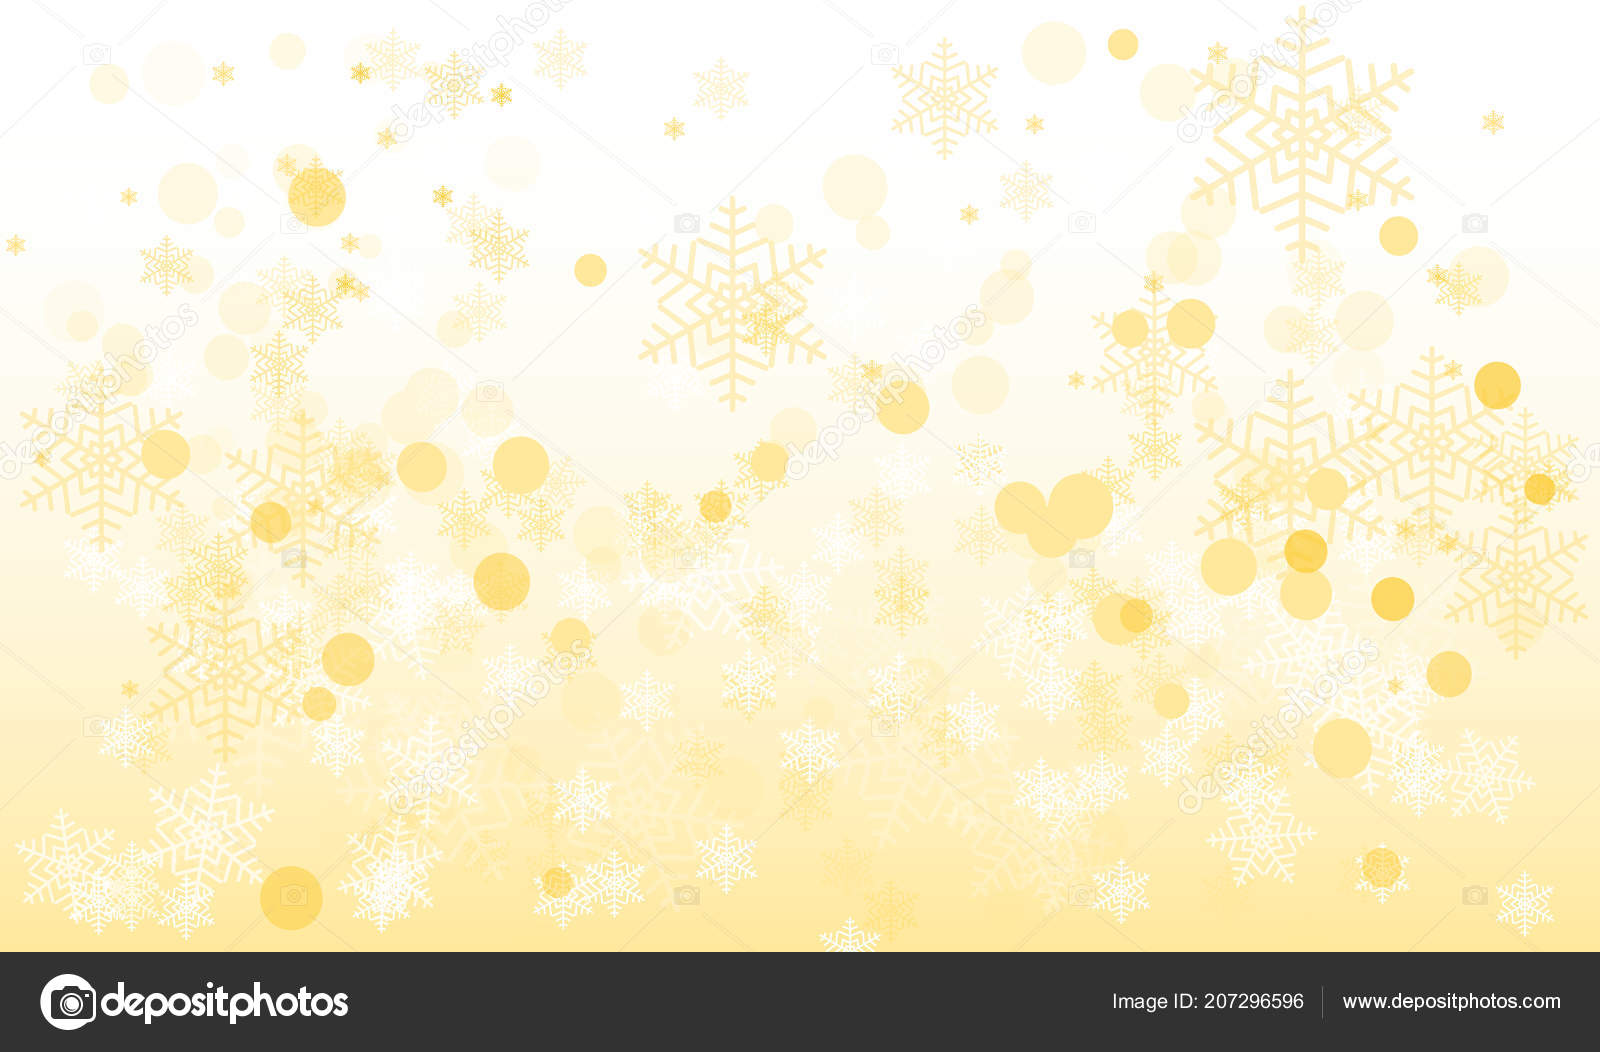 Nền vải lụa trắng vàng trừu tượng với những đường nét tinh tế và ấn tượng chắc chắn sẽ thu hút sự quan tâm của bạn. Được thiết kế đặc biệt cho mùa lễ hội, nó sẽ mang lại cảm giác sang trọng và vui tươi khi bạn tận hưởng kì nghỉ năm mới.